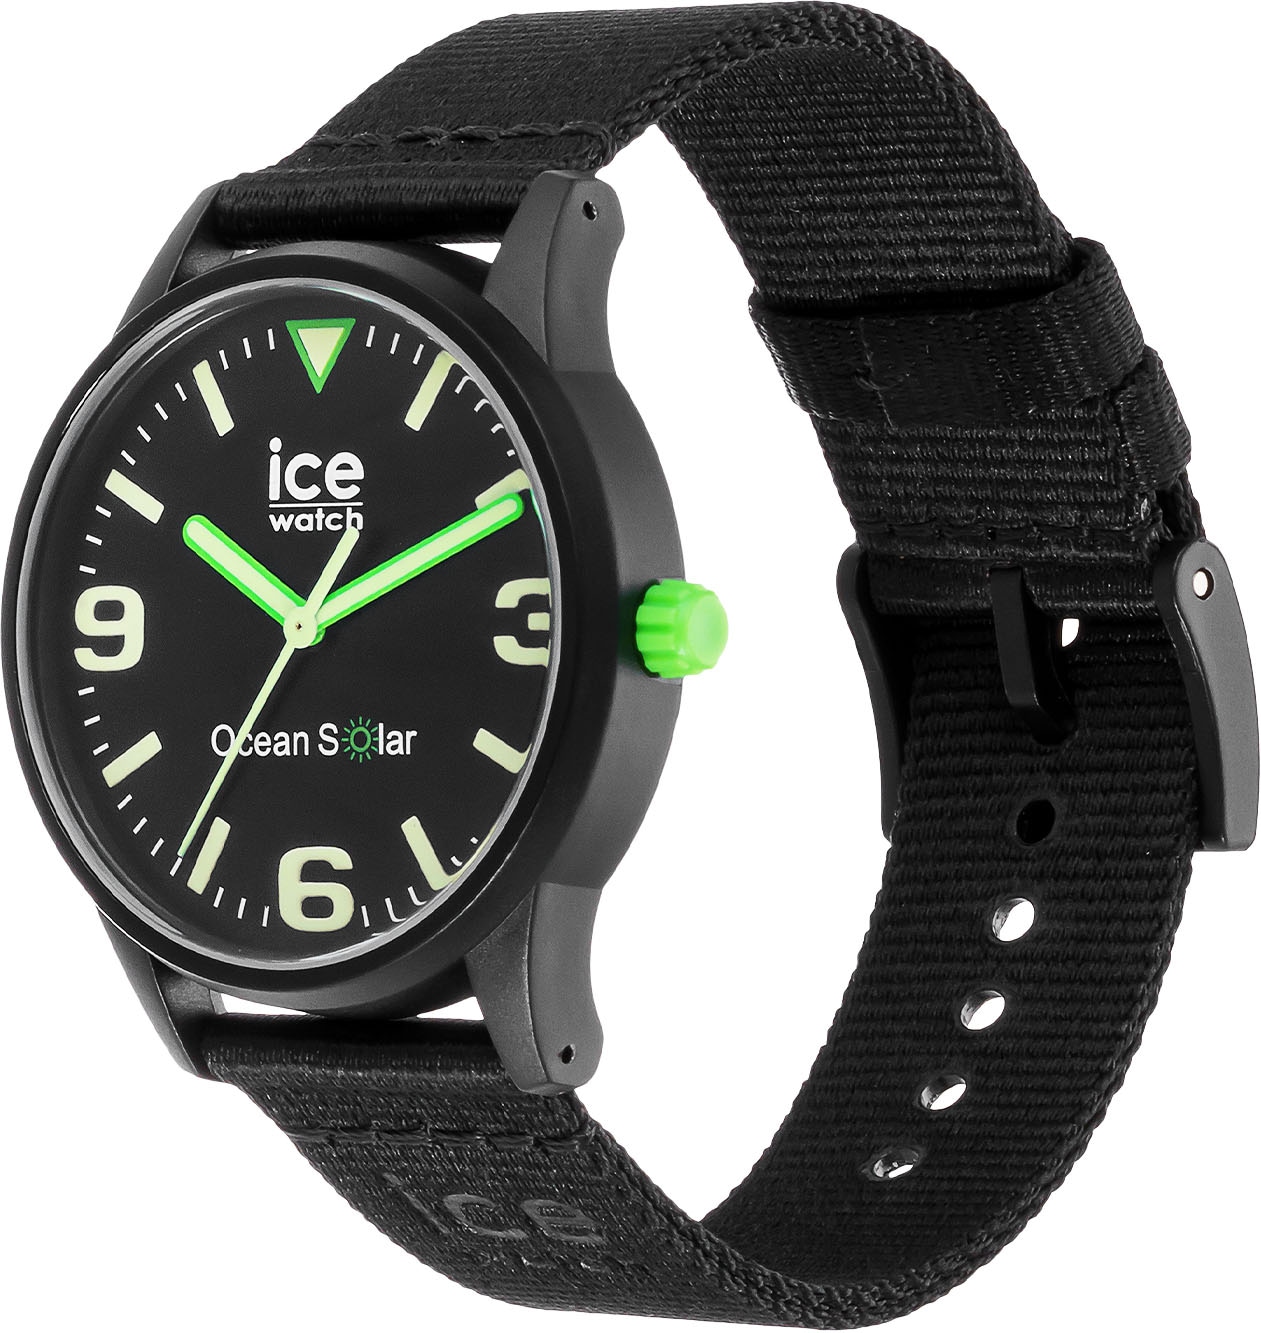 »ICE bestellen OTTO - ice-watch SOLAR, online bei Solaruhr ocean 019647«